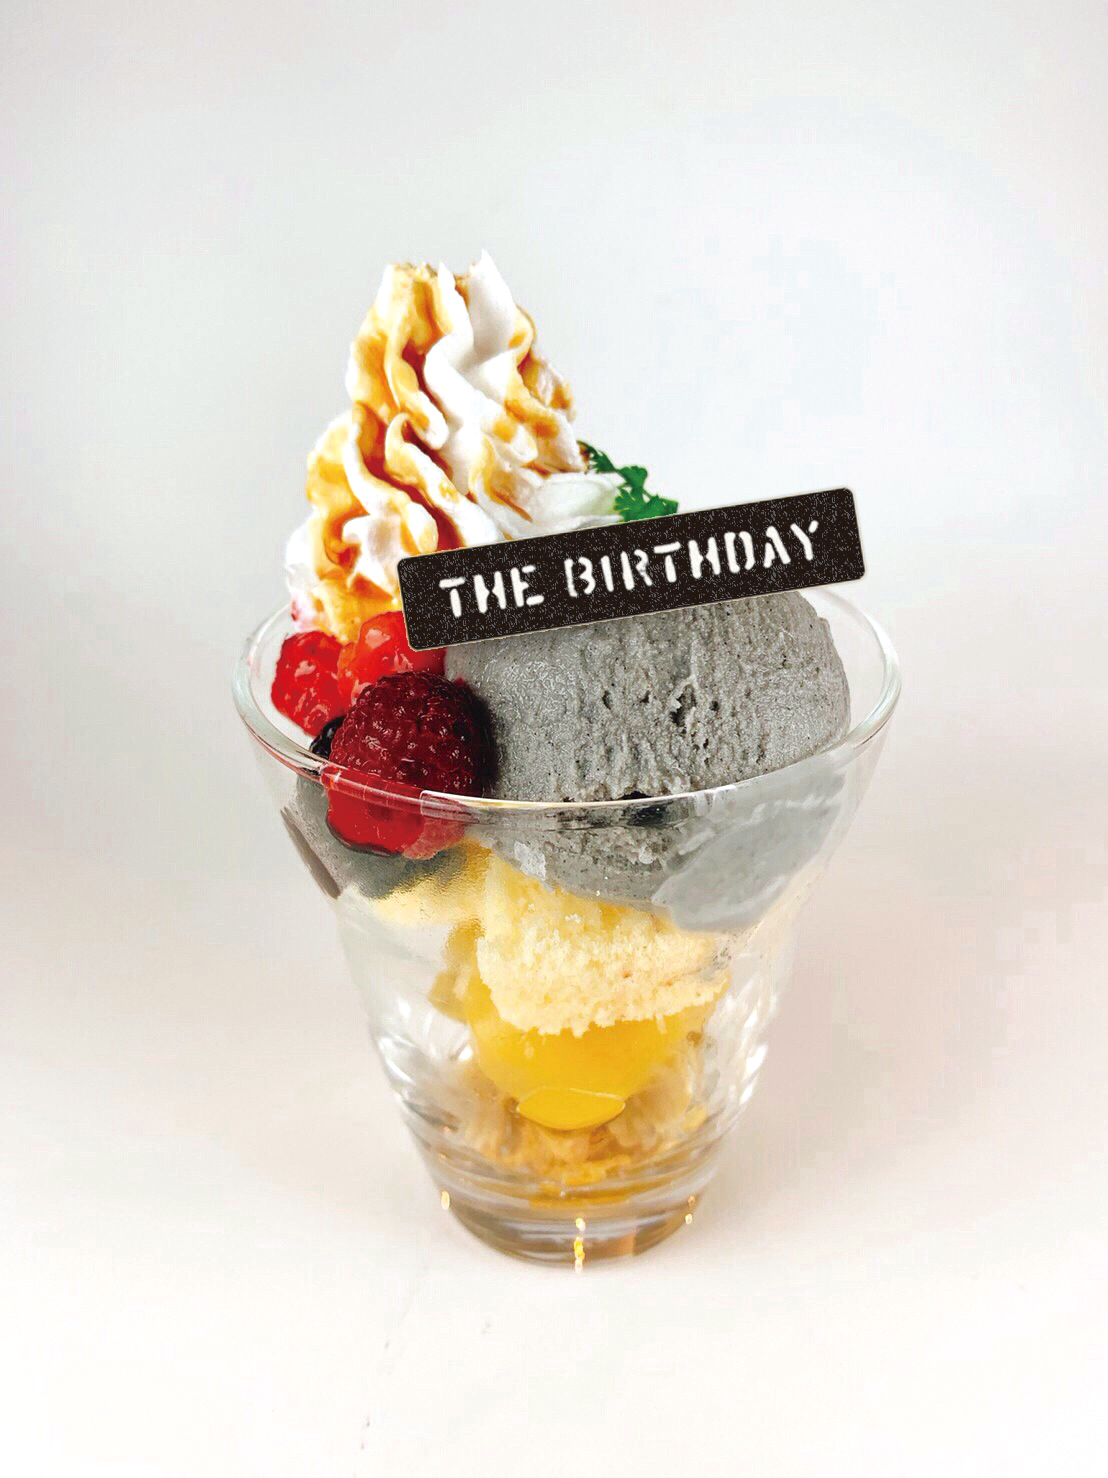 3/25更新】The Birthday × TOWER RECORDS CAFE コラボカフェ開催決定